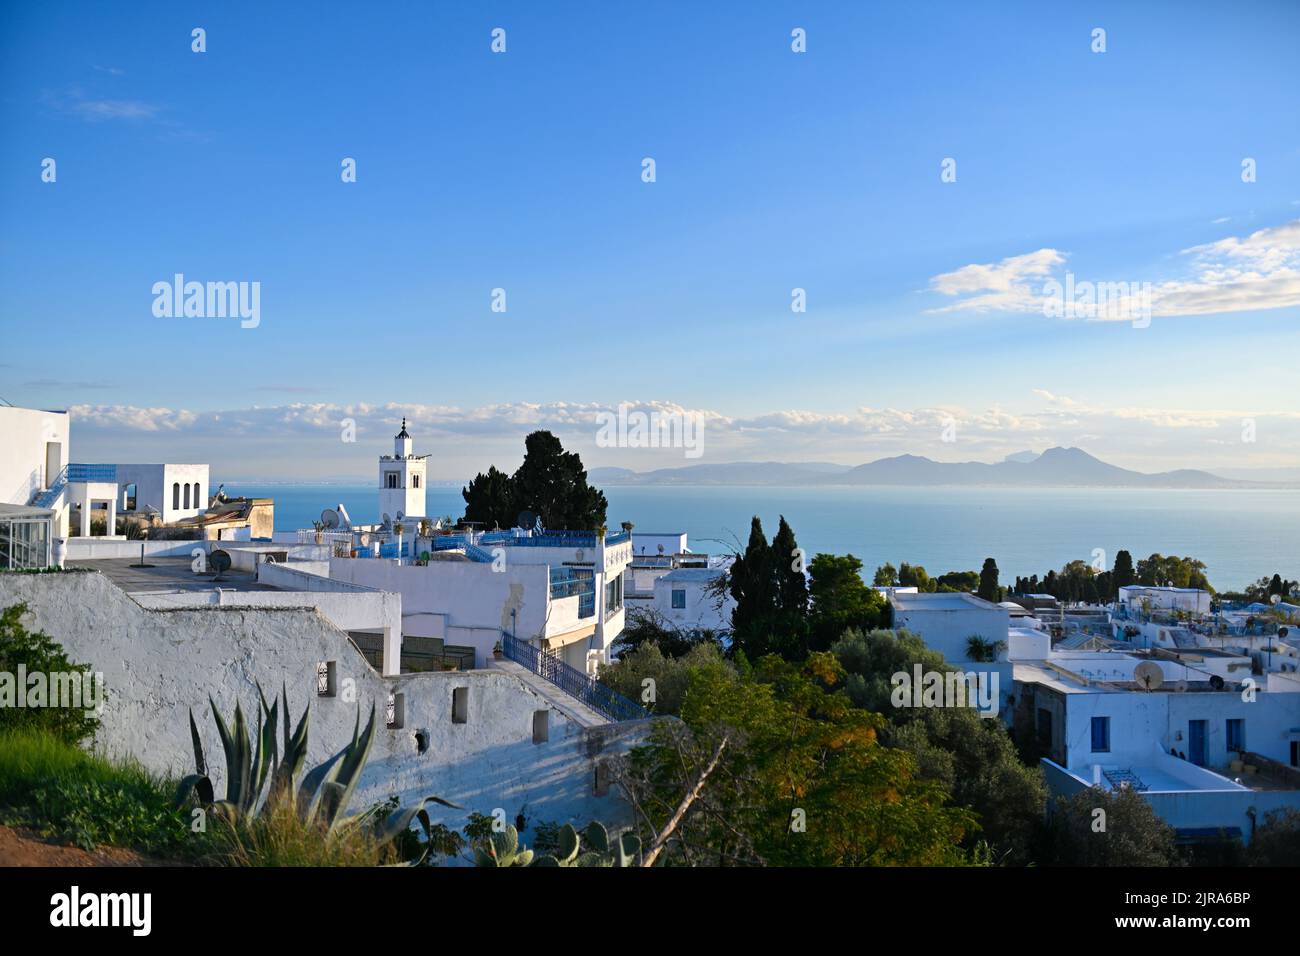 Tunesien: Sidi Bou sagte: Die Stadt und ihre weißen Häuser mit blauen Türen und Dachterrassen, die arabische und andalusische Architektur vereinen, sind hoch gesetzt Stockfoto